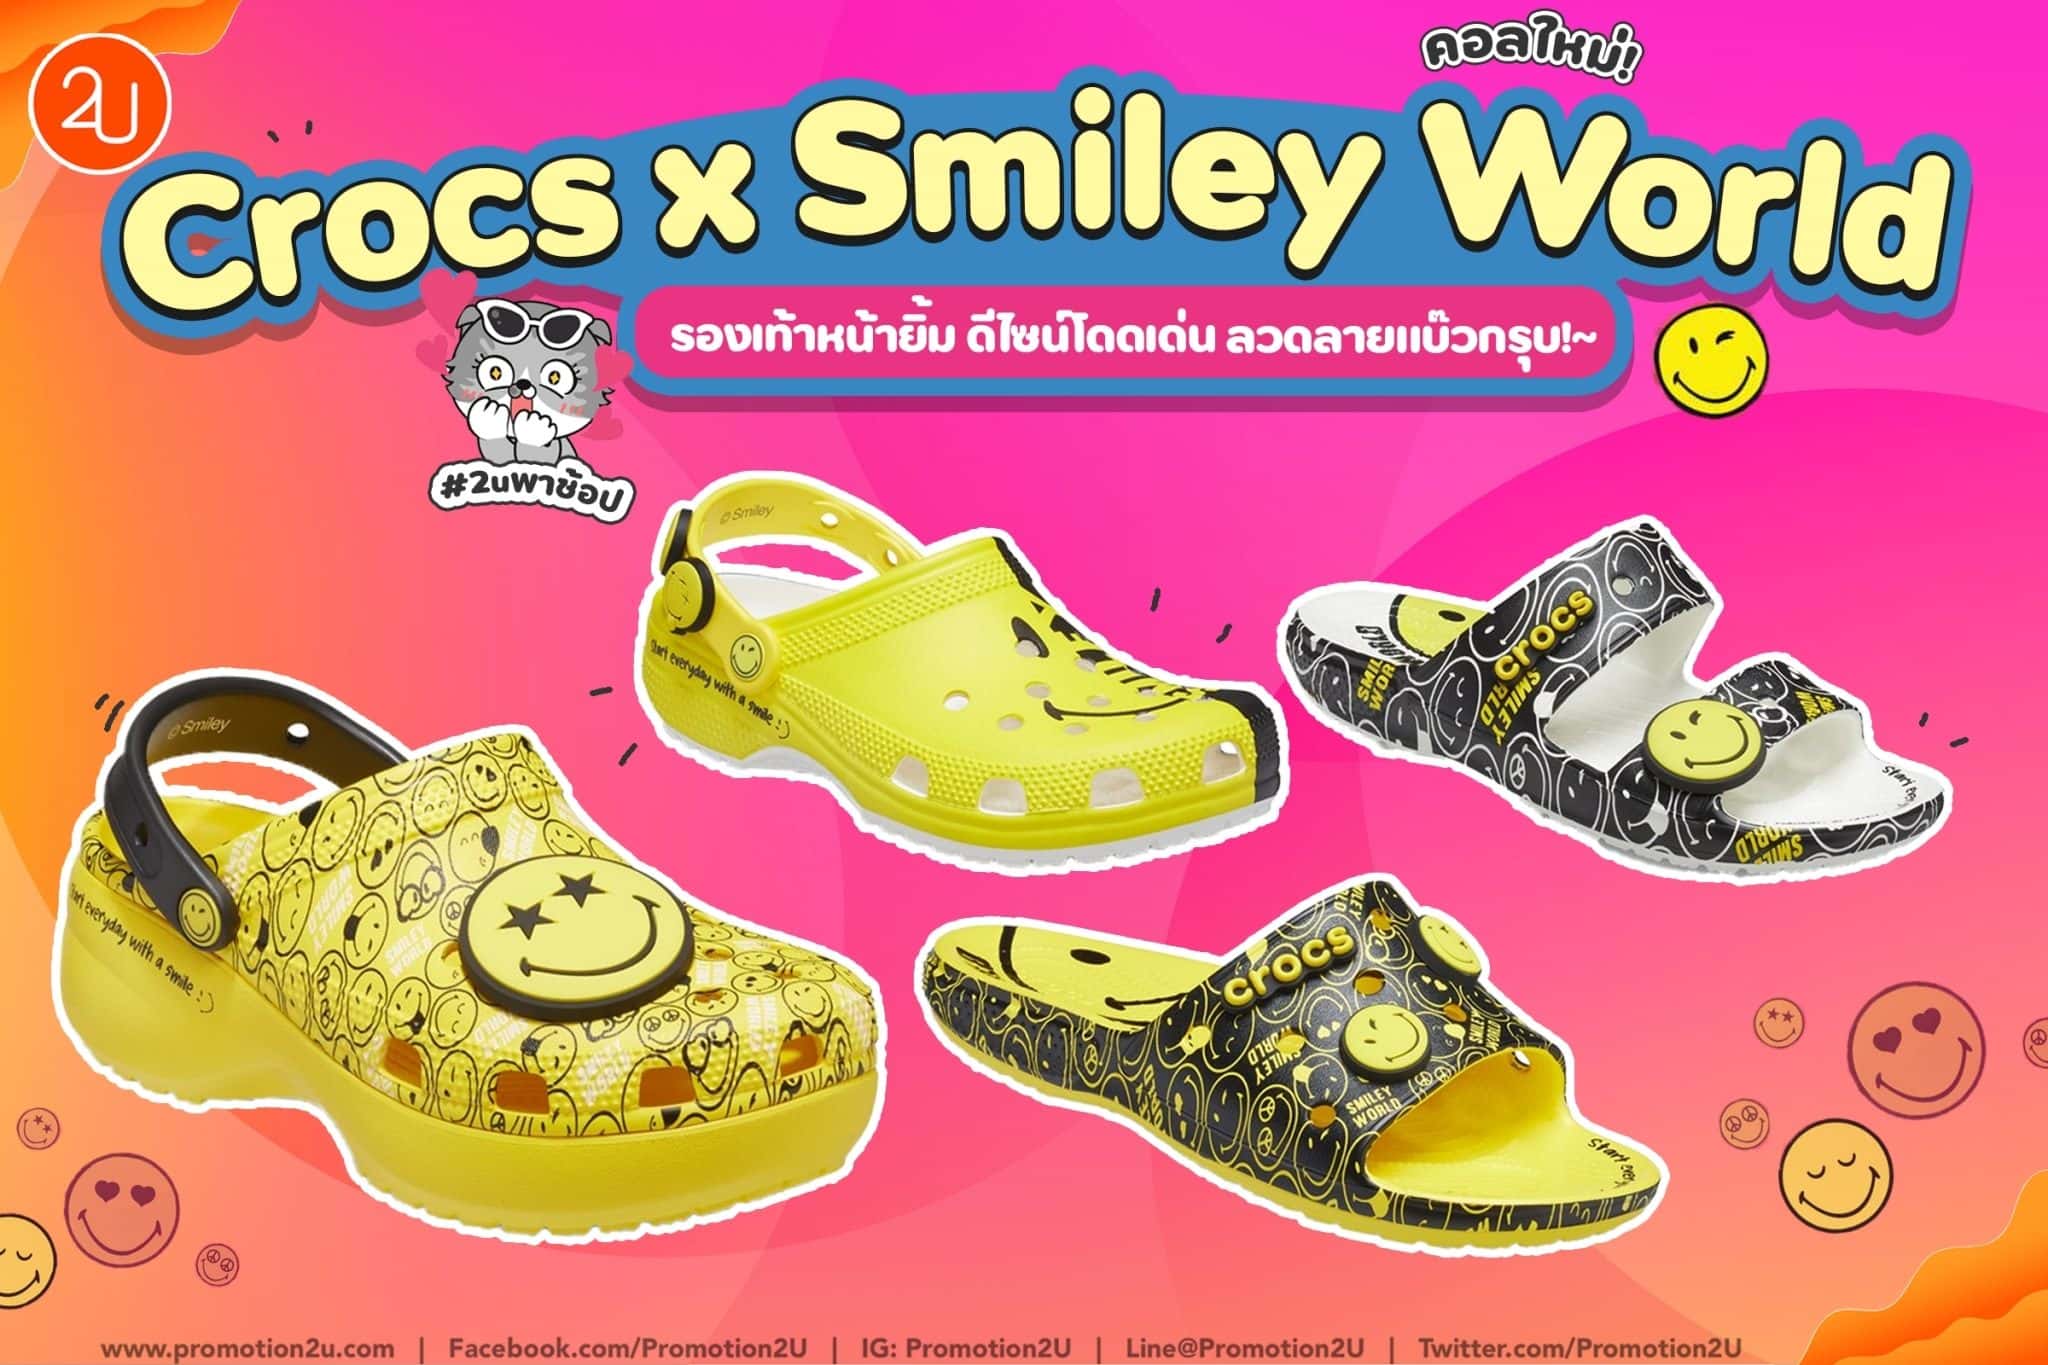 รองเท้าหน้ายิ้ม Crocs x Smiley World สีเหลืองละมุน น่ารักหวานเจี๊ยบ ~